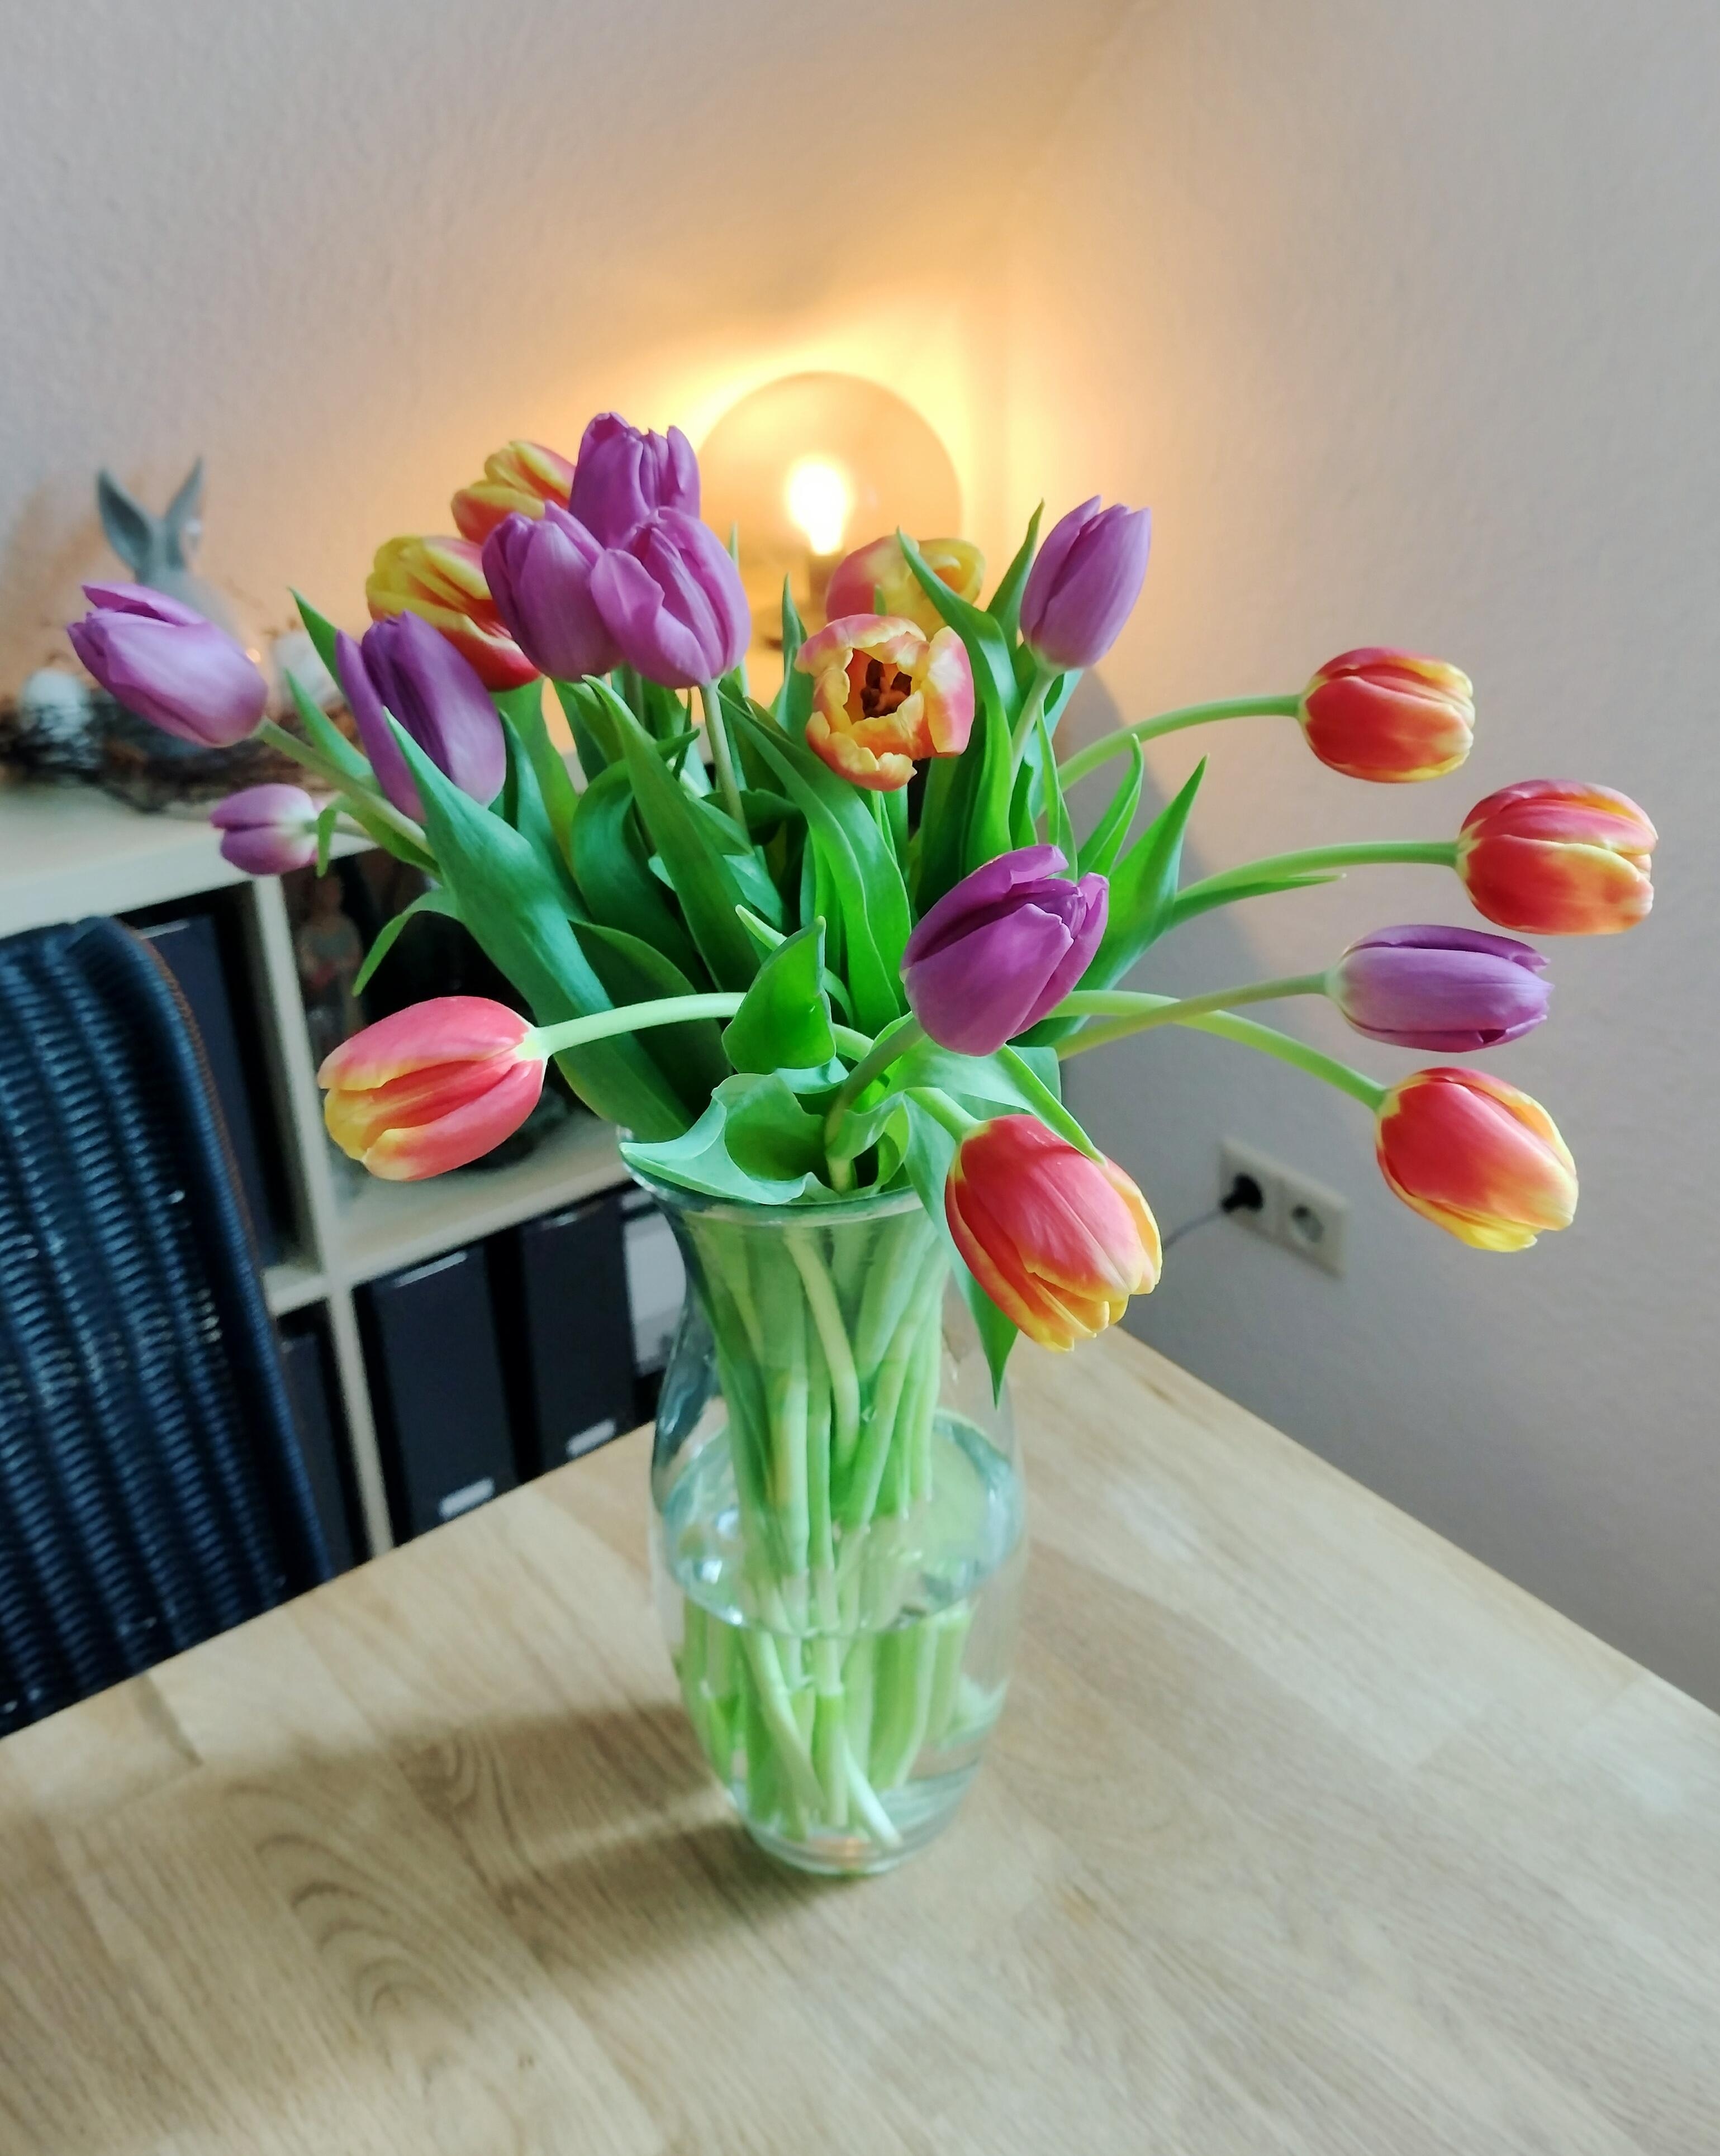 #tulpen #tulpenliebe #vase #glasvase #lampe #licht #frischeblumen